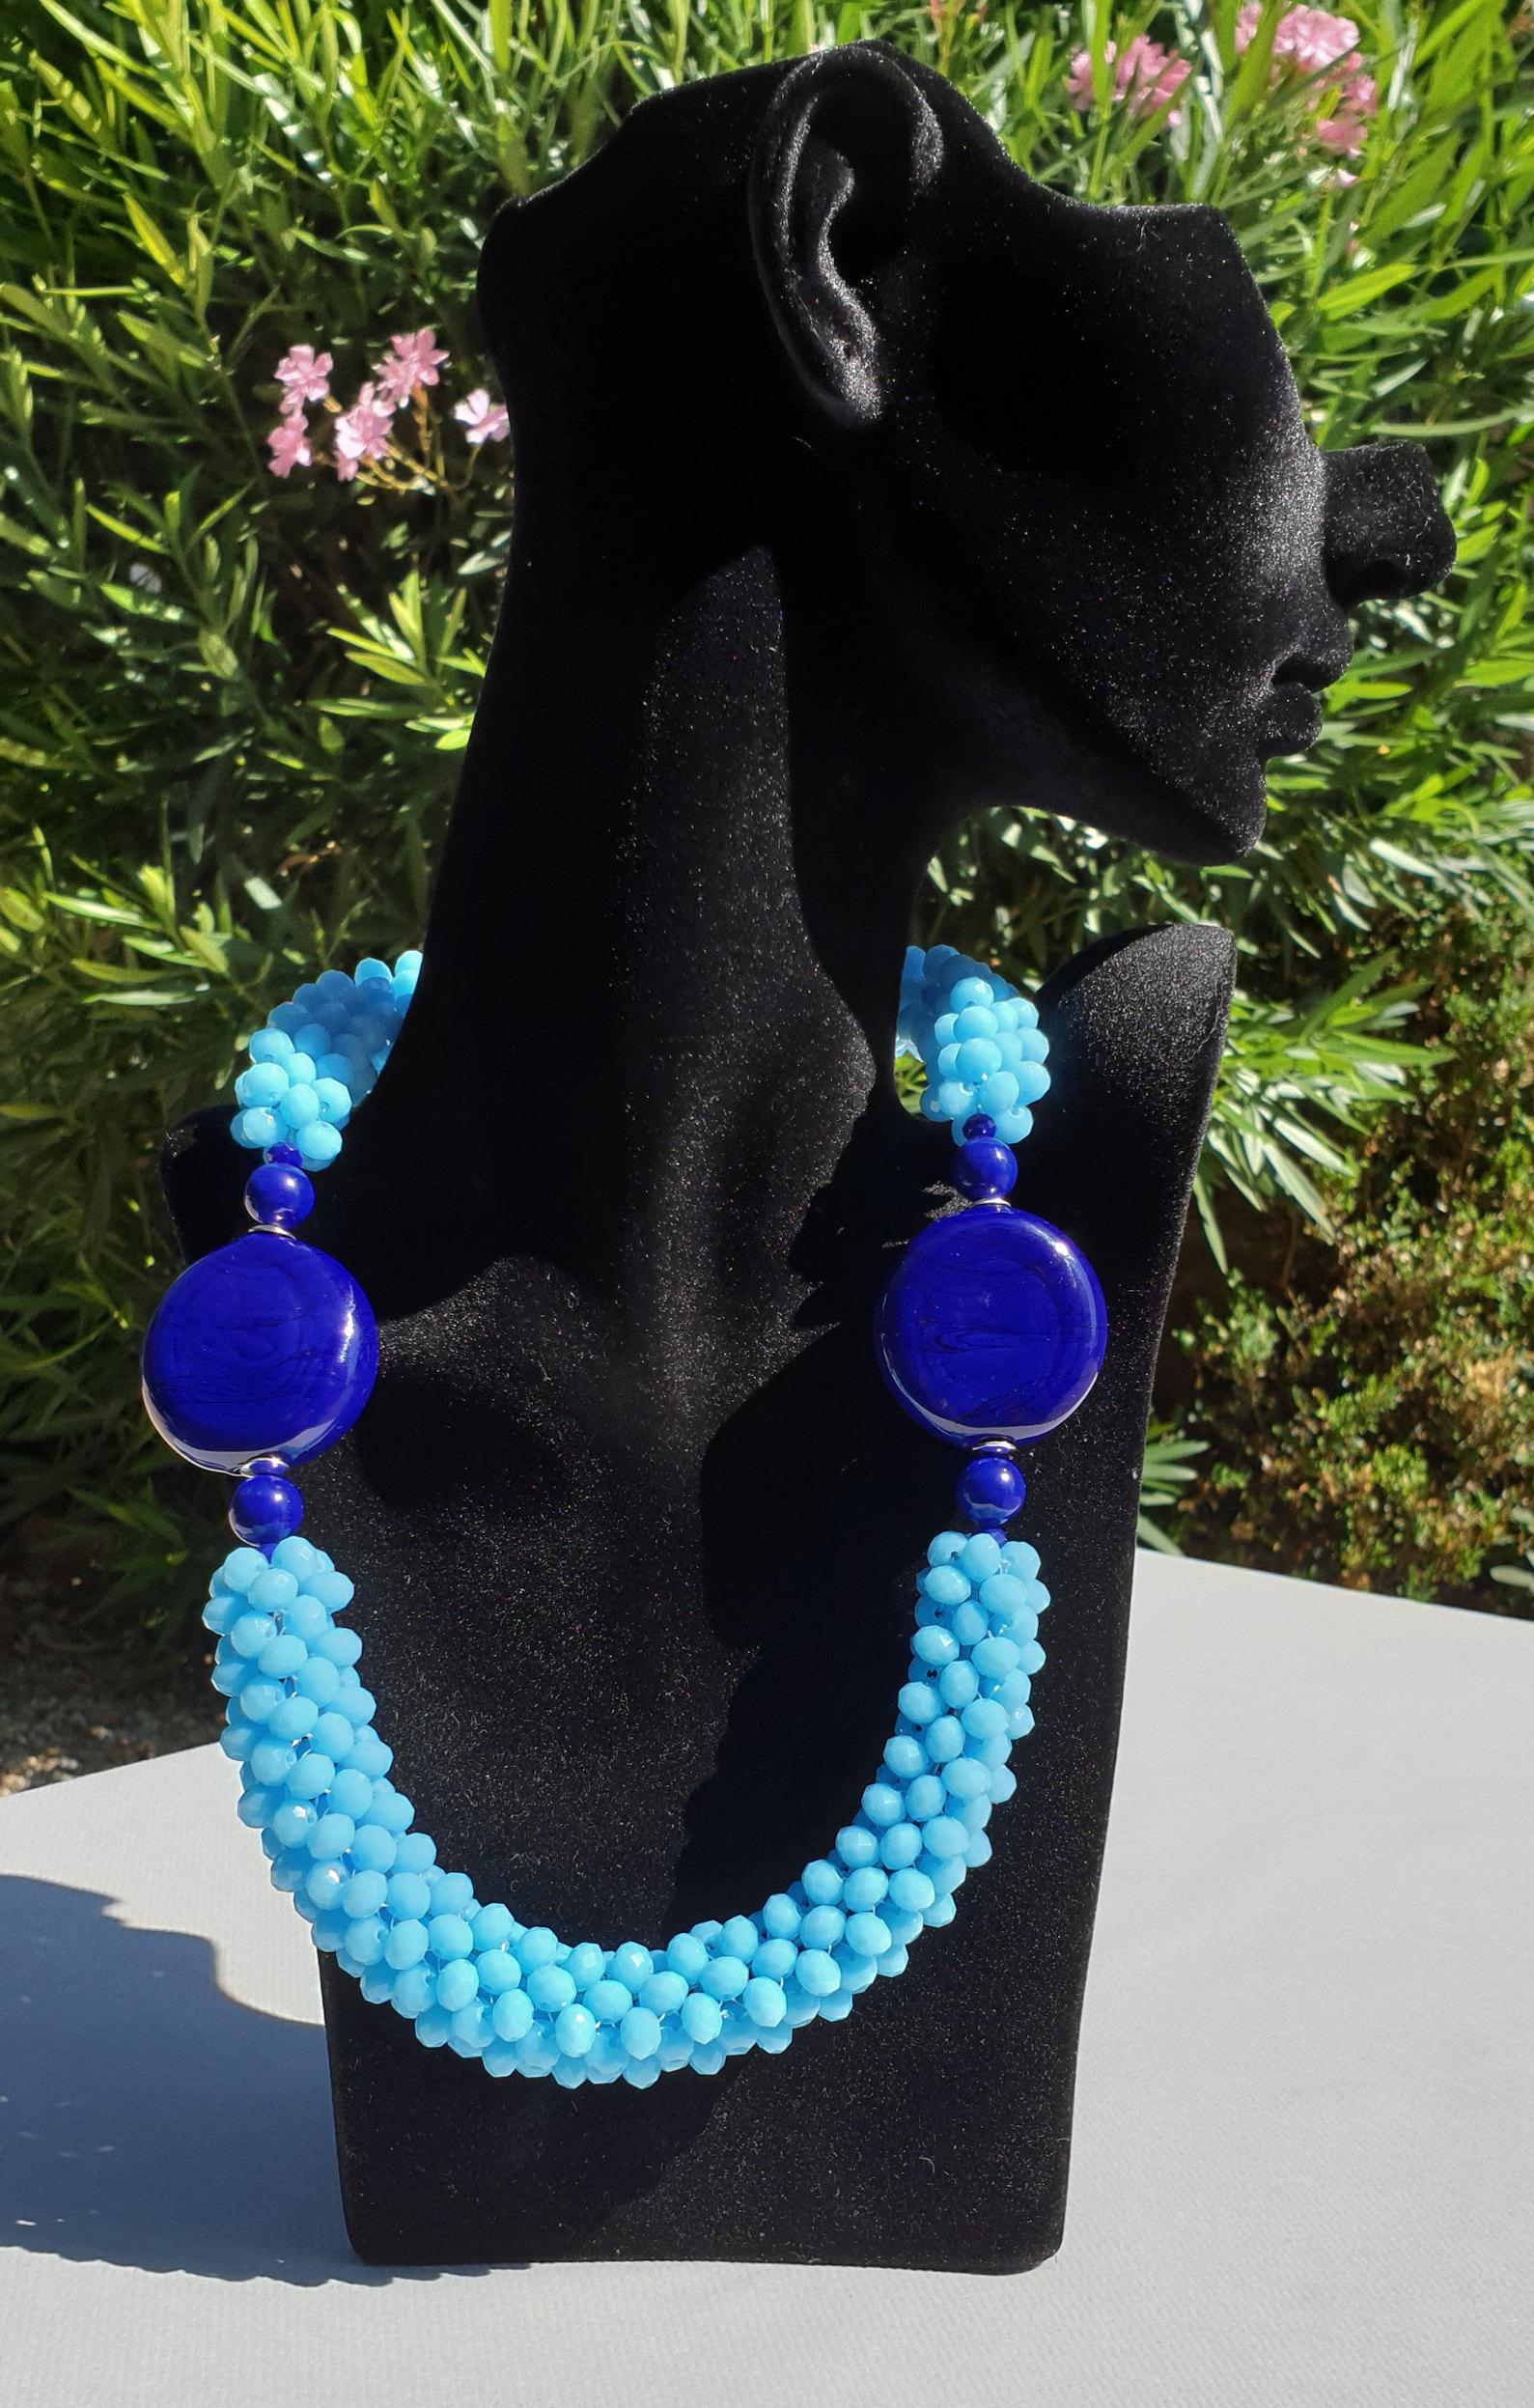 Marine blue and sky blue Murano glass beads costume necklace.
Unique, hand made by artist Paola B. in Venise, Italy, 2010s.
The artist is a member of Venezia Vetro Acqua e Terra, and AMA: Associazione Maestri Artigiani del Vetro.
Made of: Murano